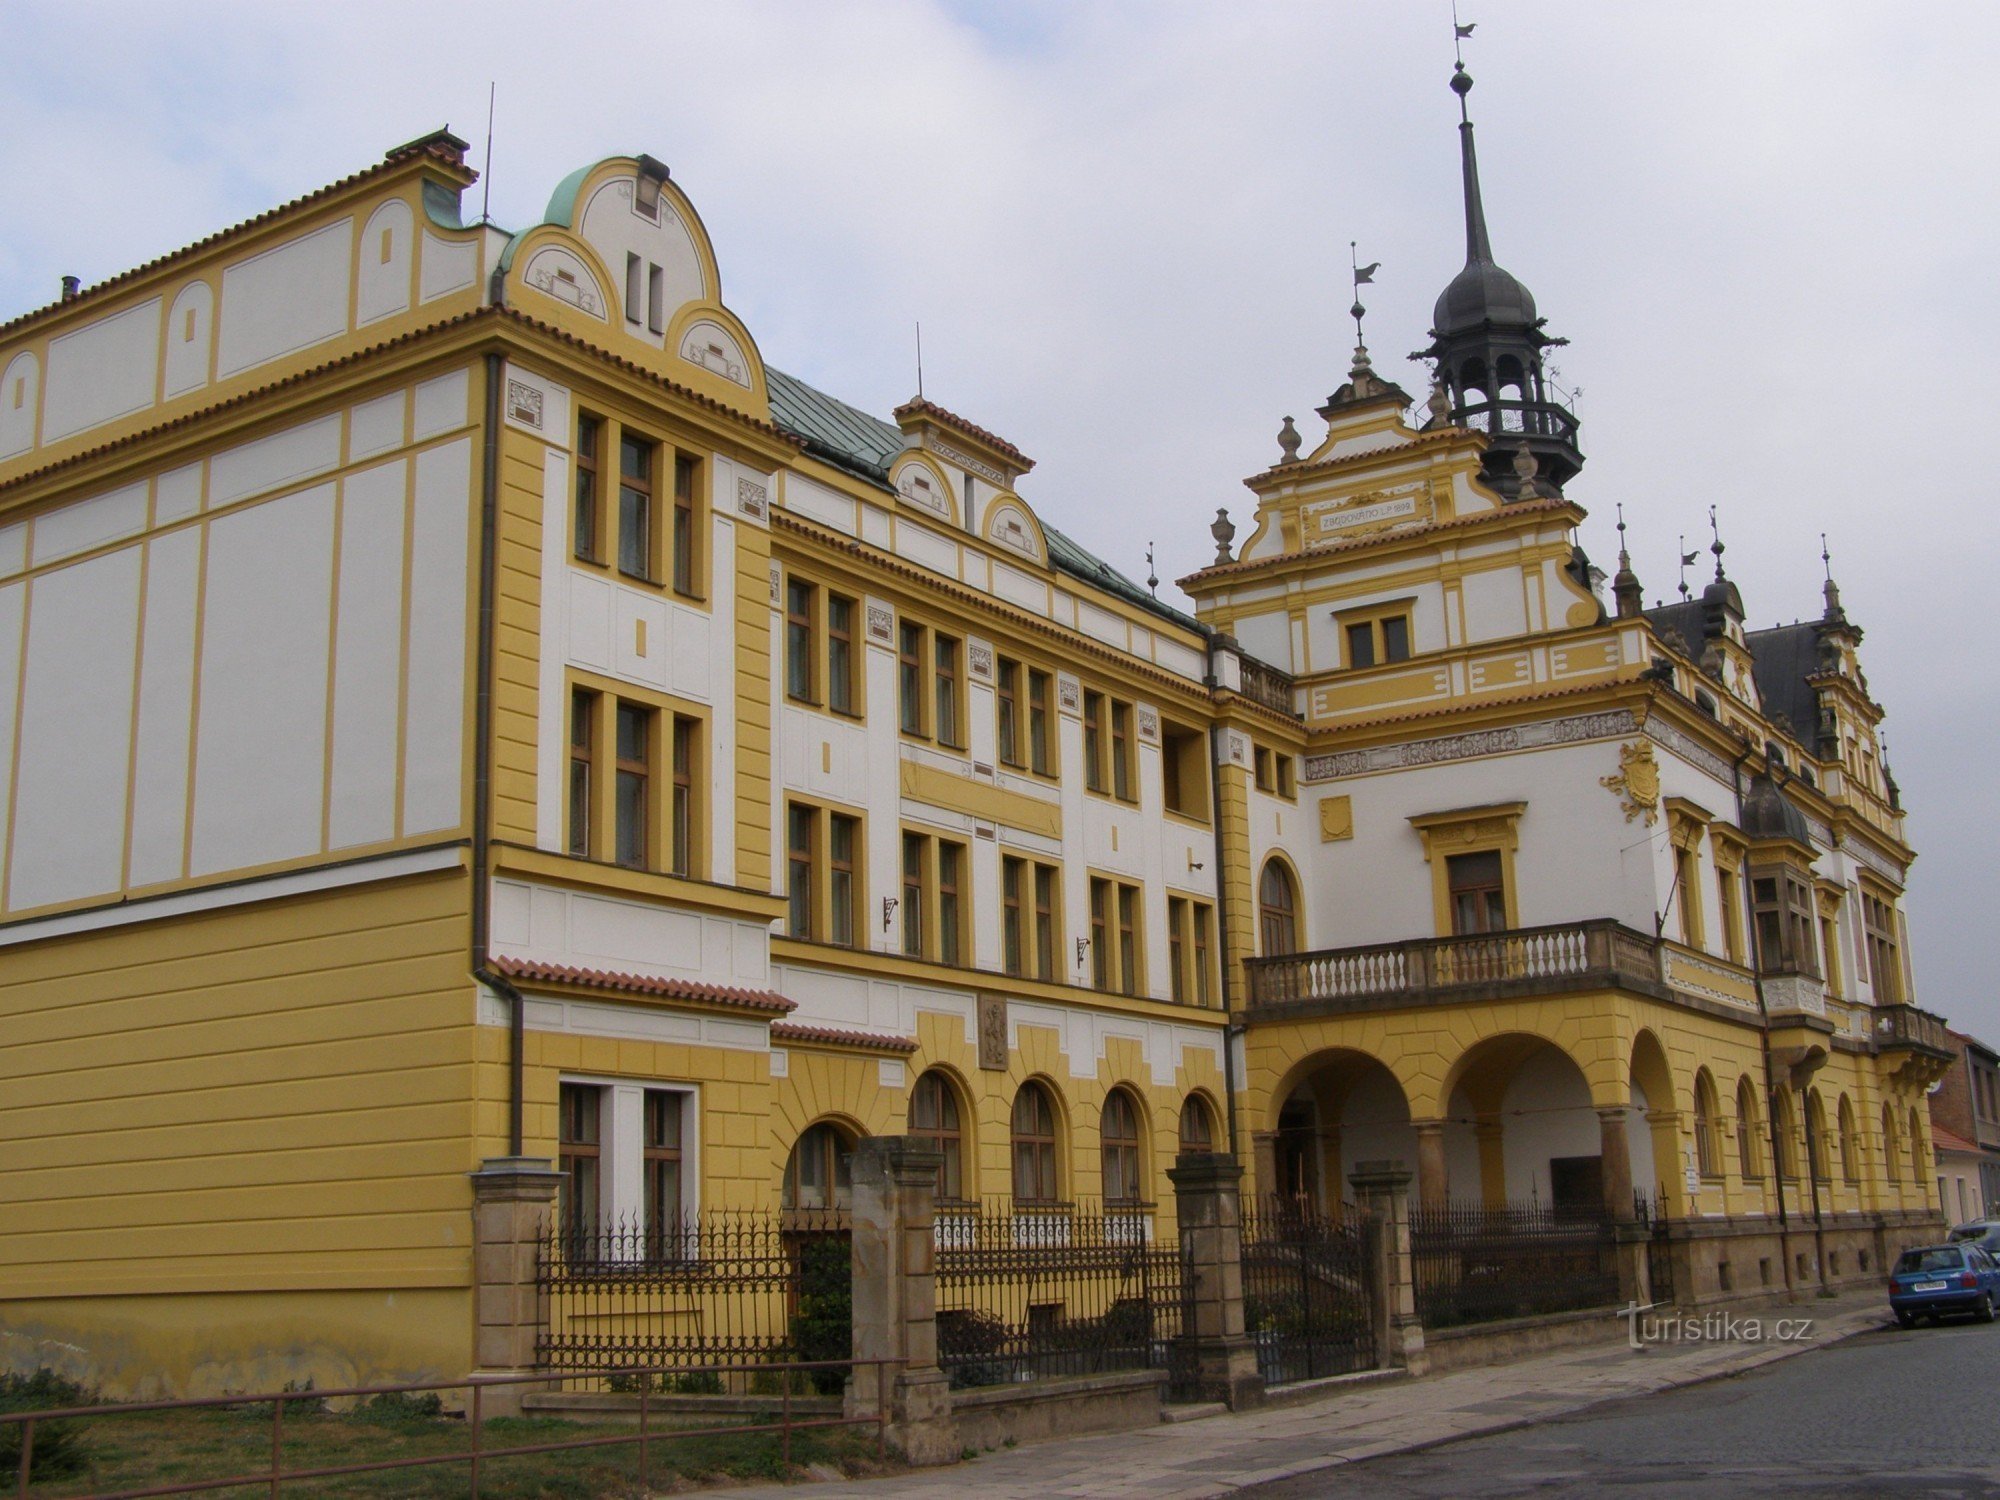 Nový Bydžov - District House